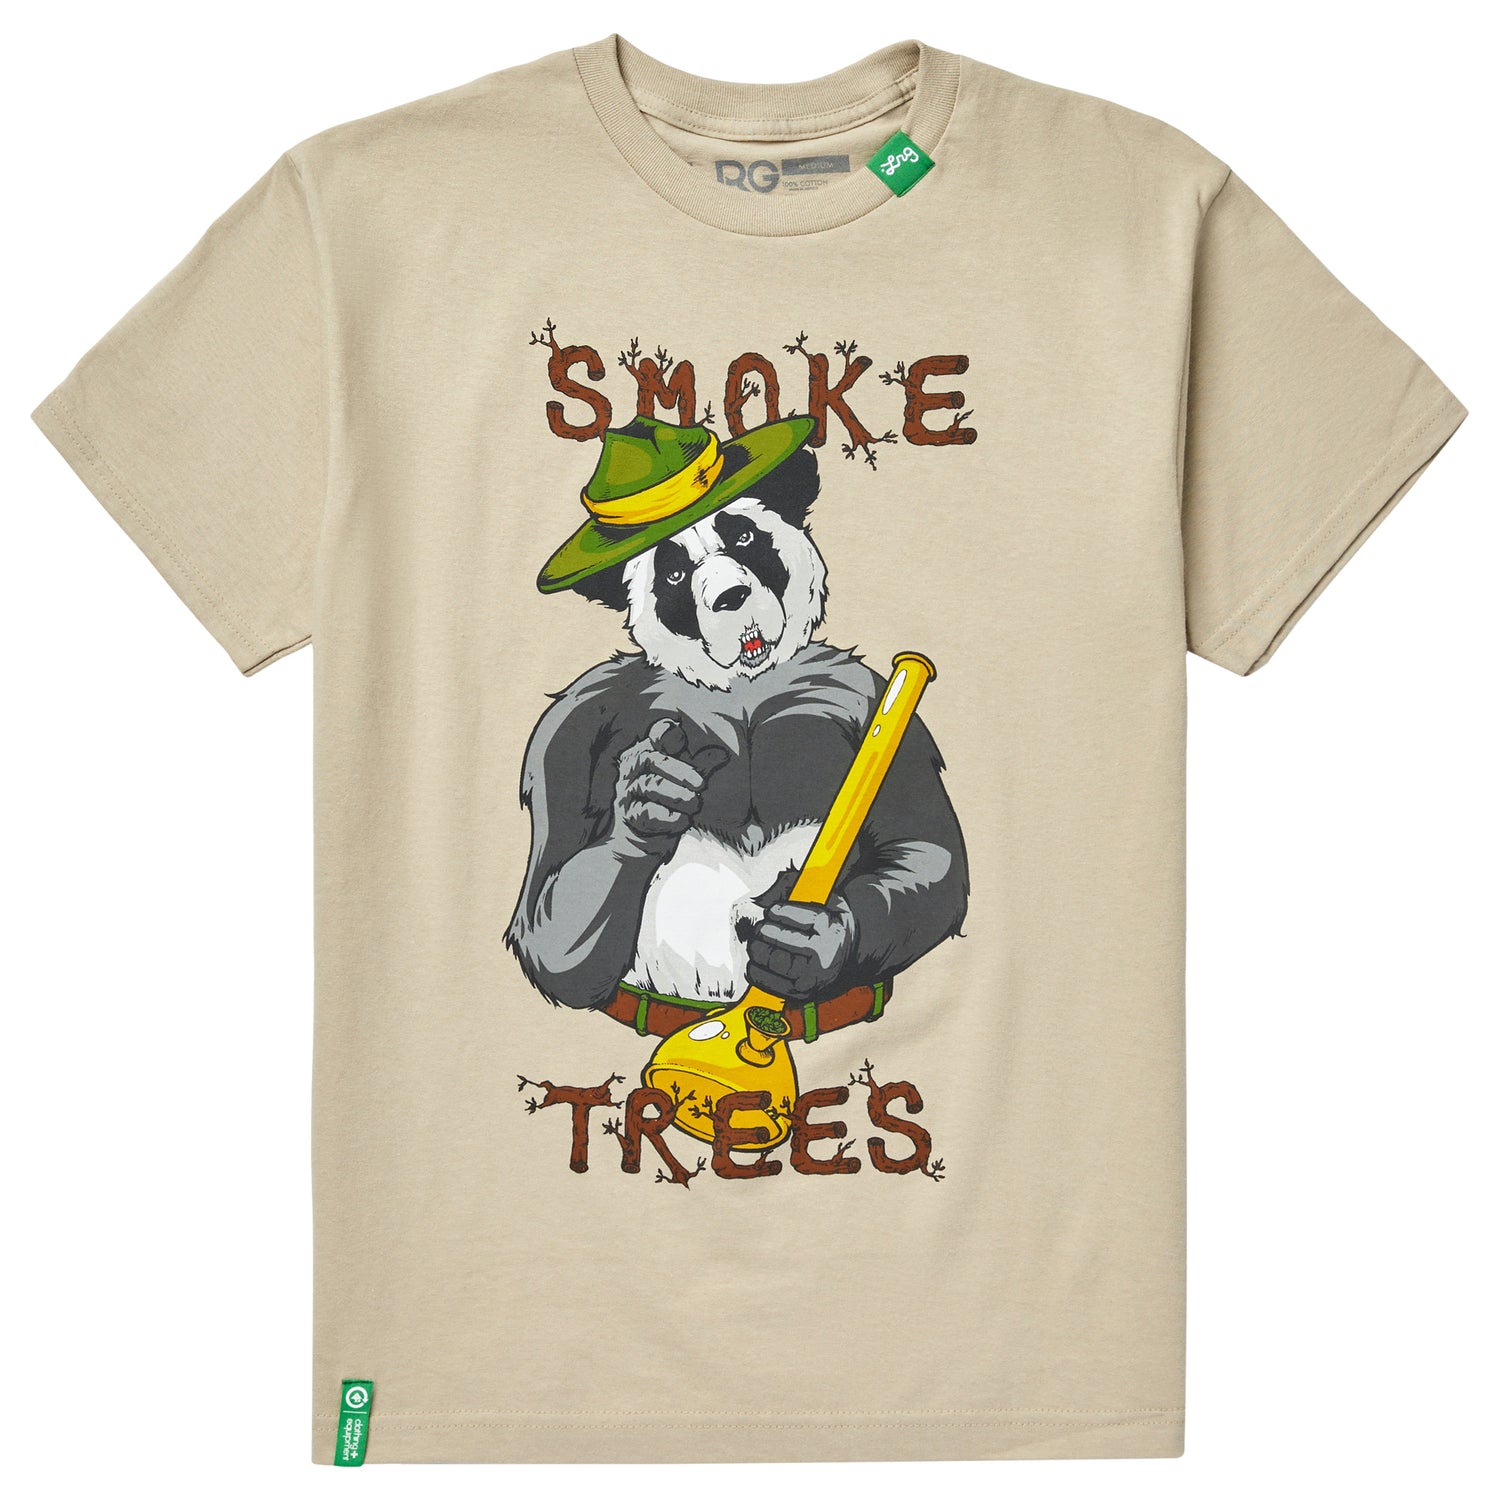 SMOKE TREES TEE - SAND